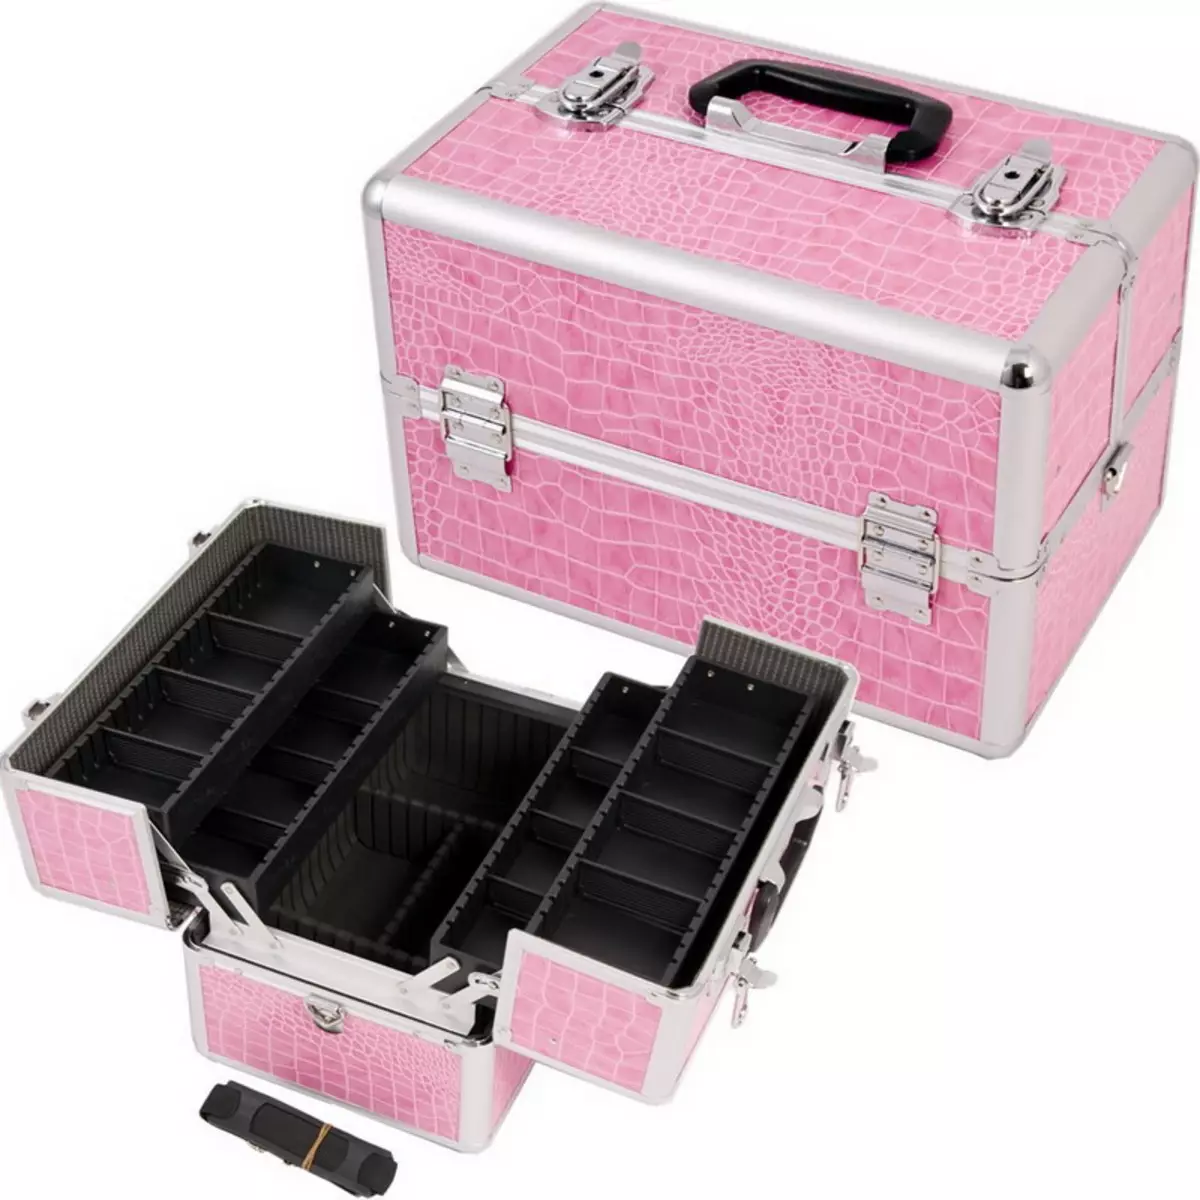 Cases de cosméticos (60 fotos): maletas sobre rodas, bolsas e outros almacenamento de cosméticos de beleza. Elección de casos cosméticos profesionais 4364_25